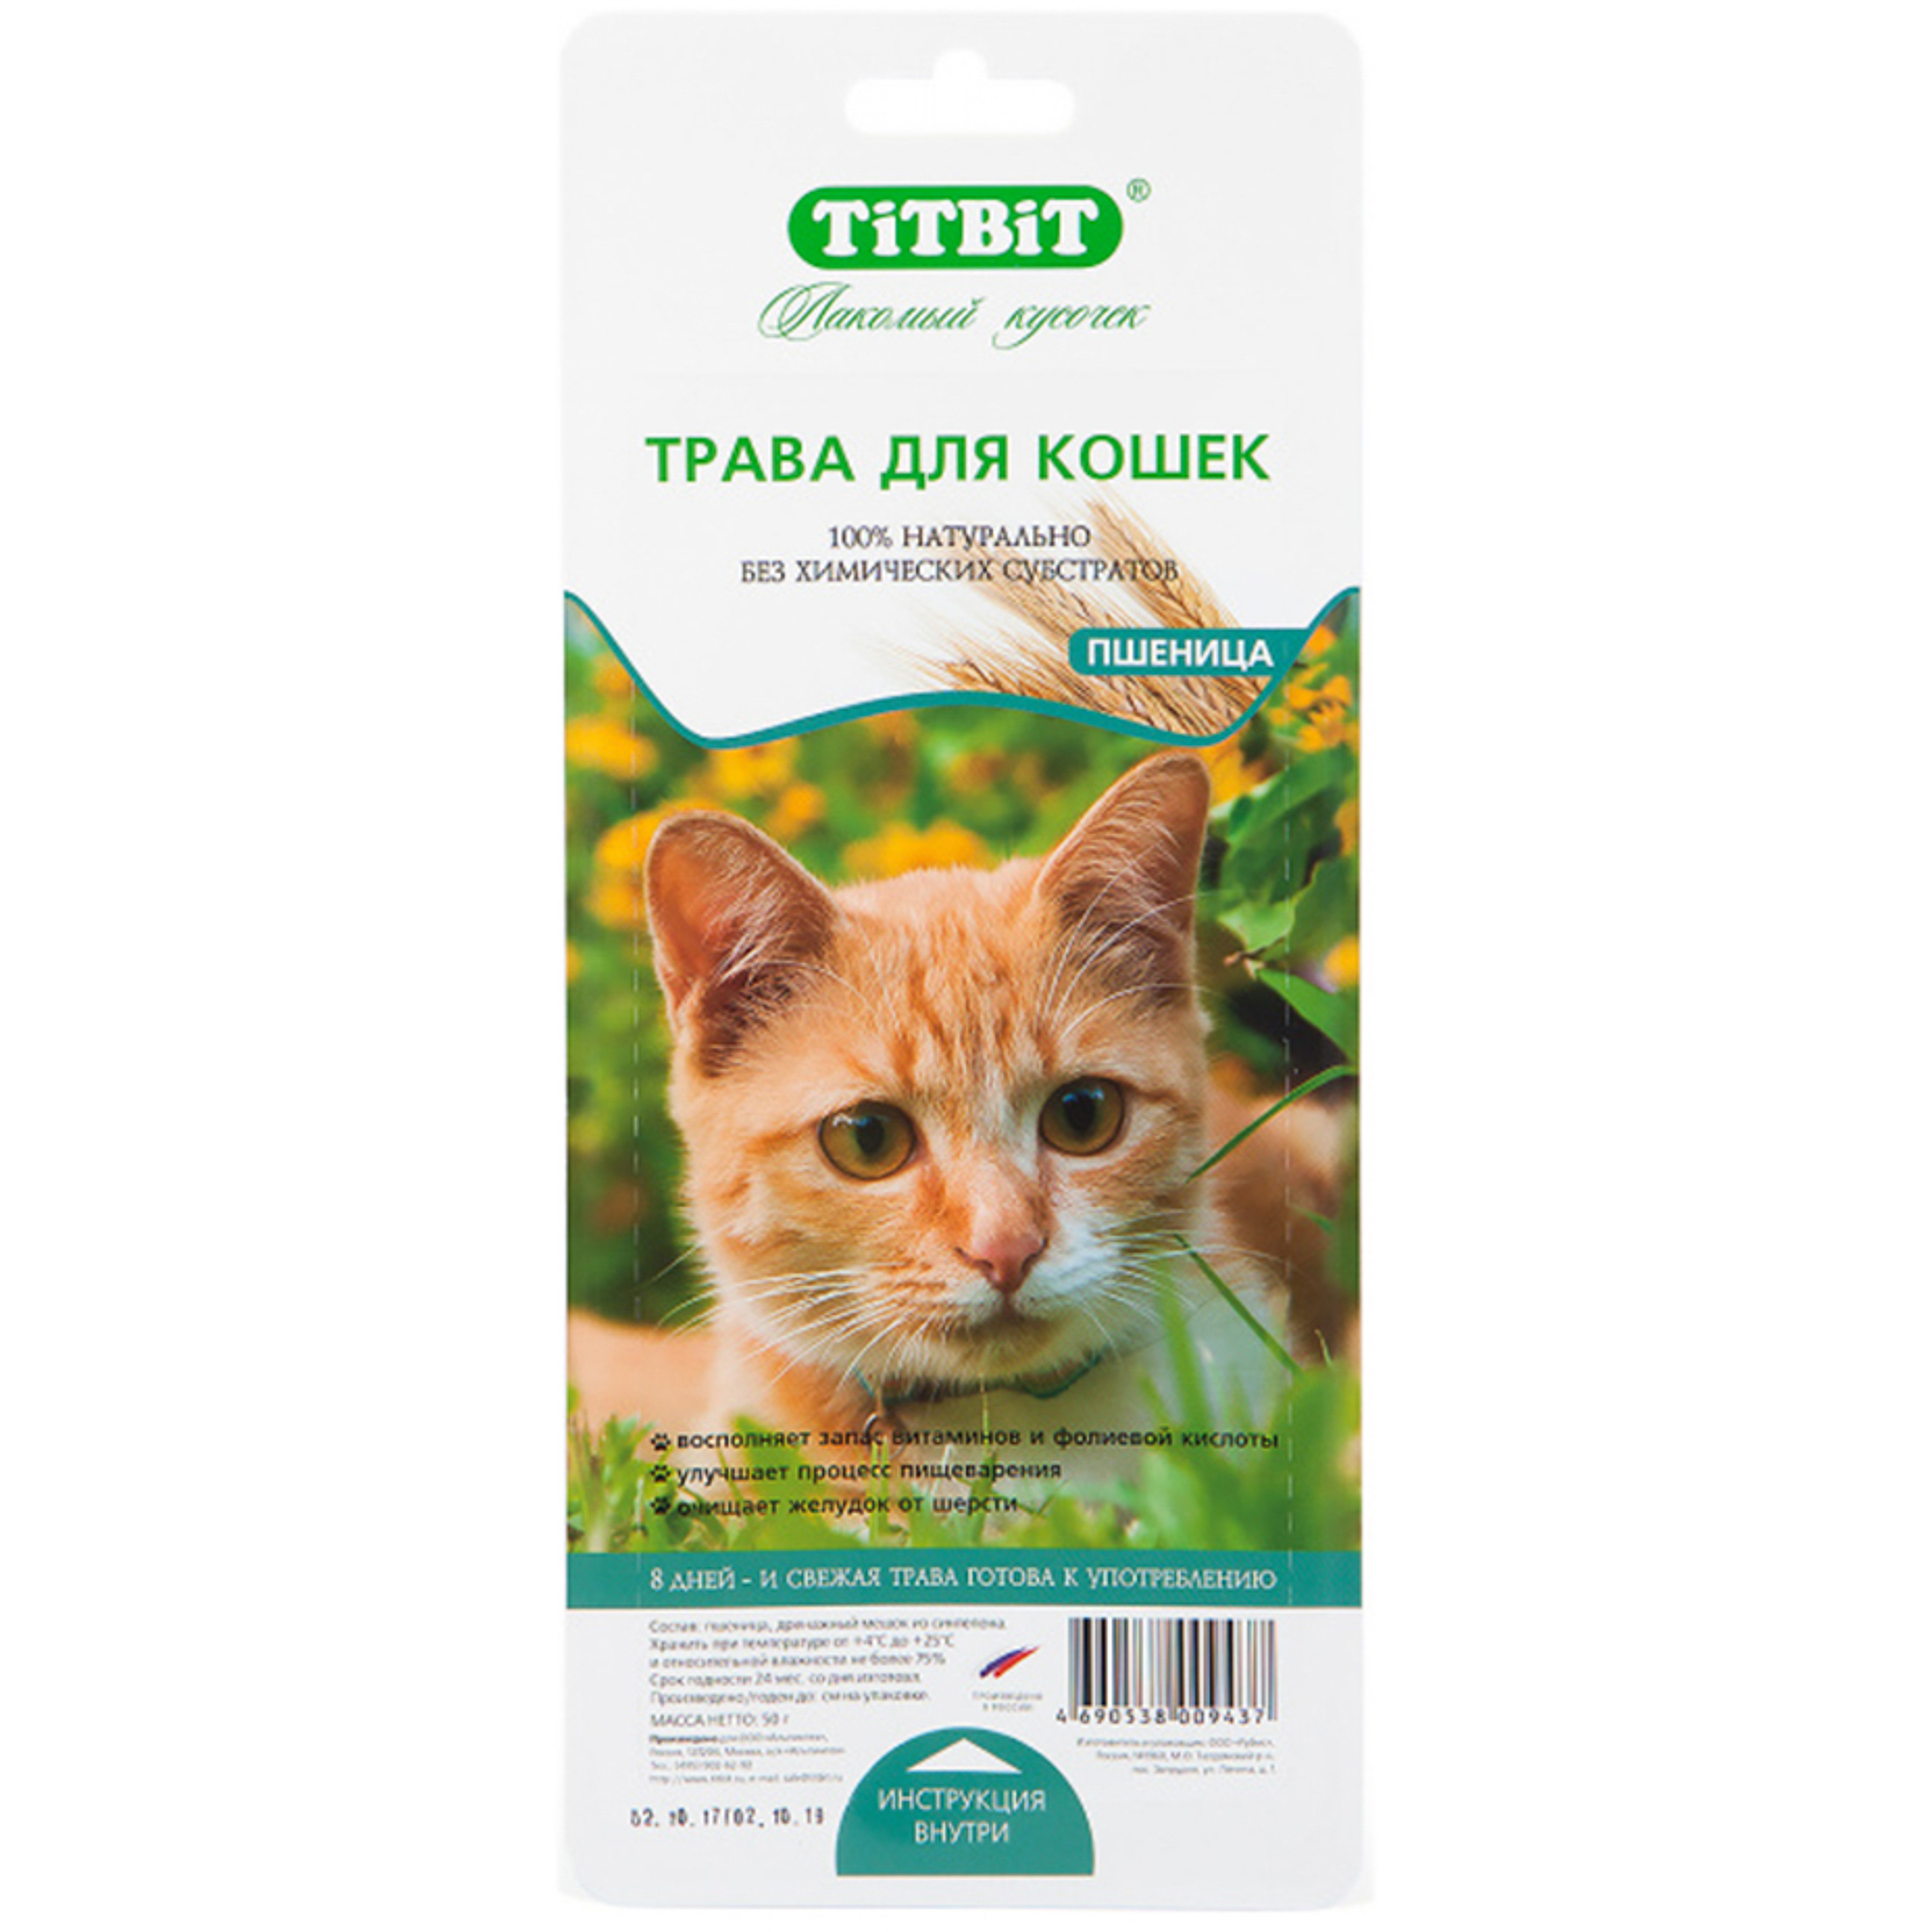 Травка для кошек TITBIT пшеница 50г цена и фото